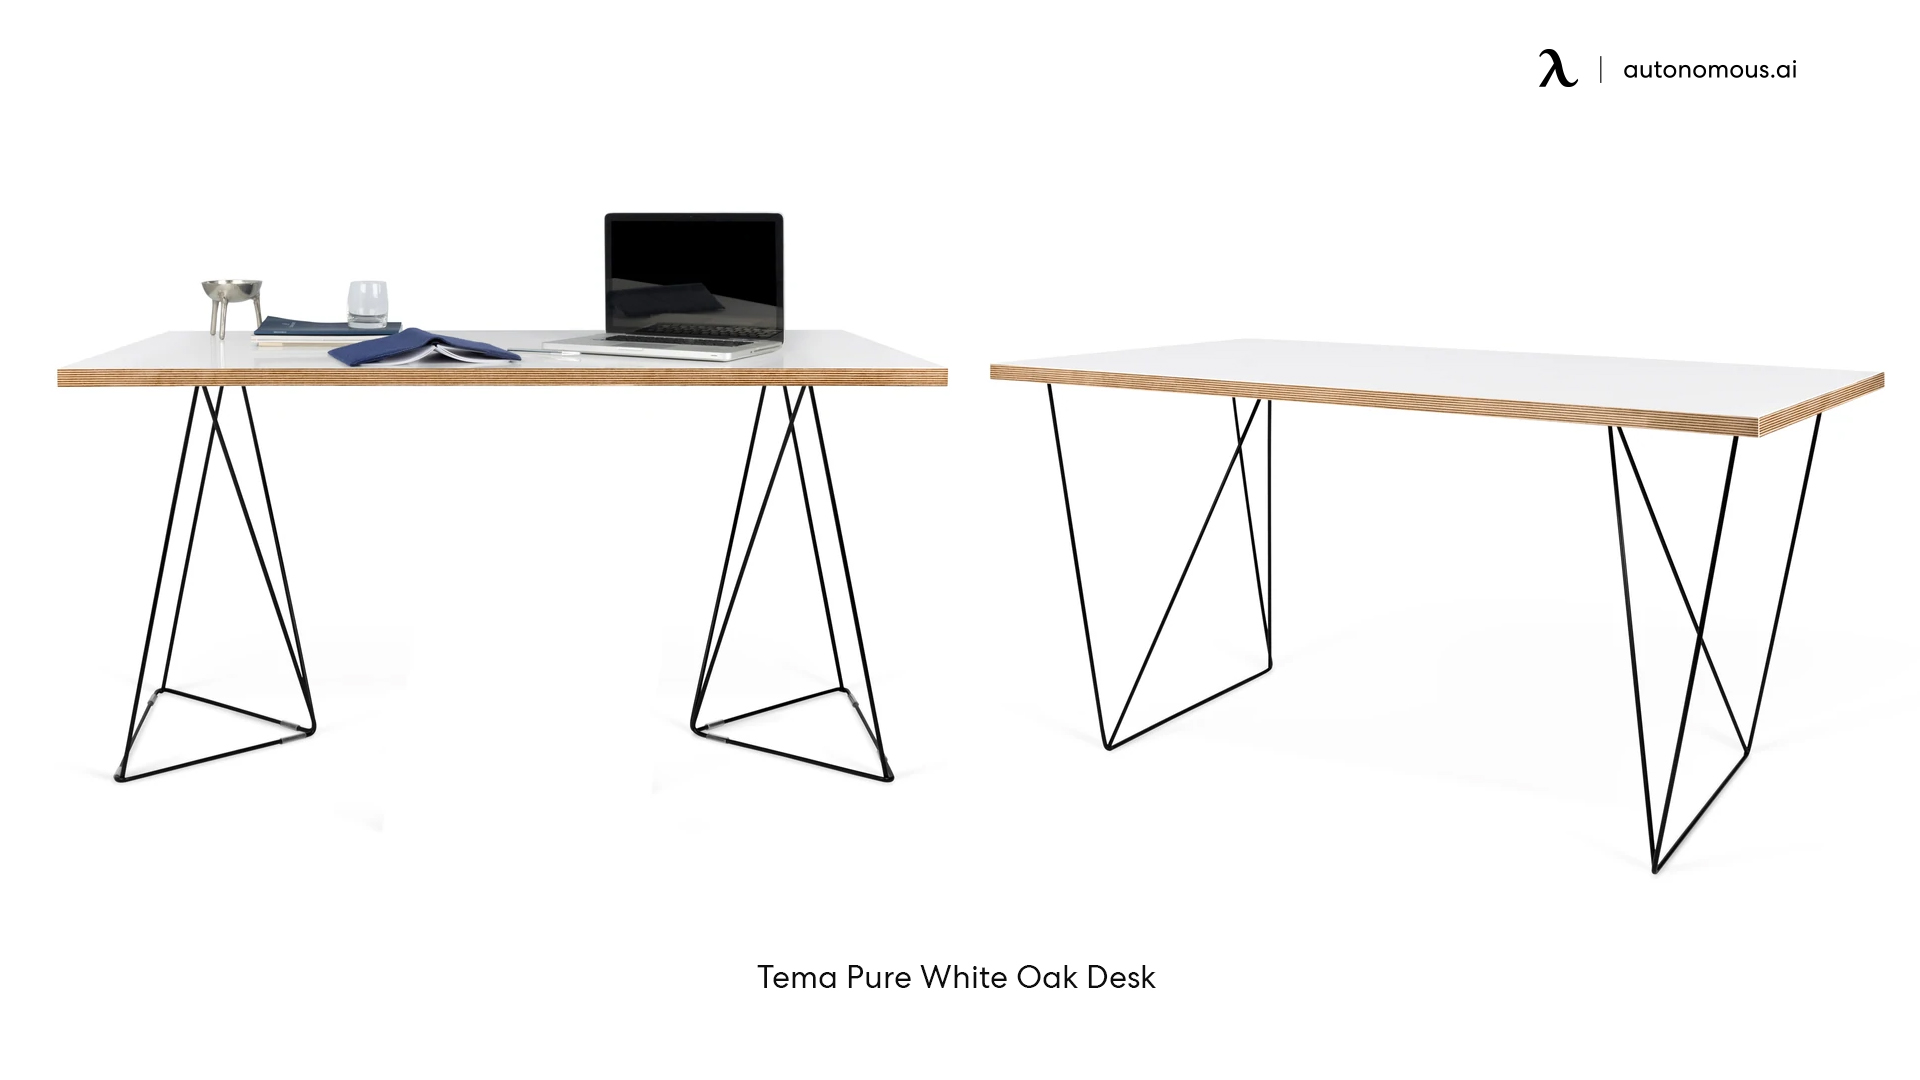 Tema Pure White Oak Desk